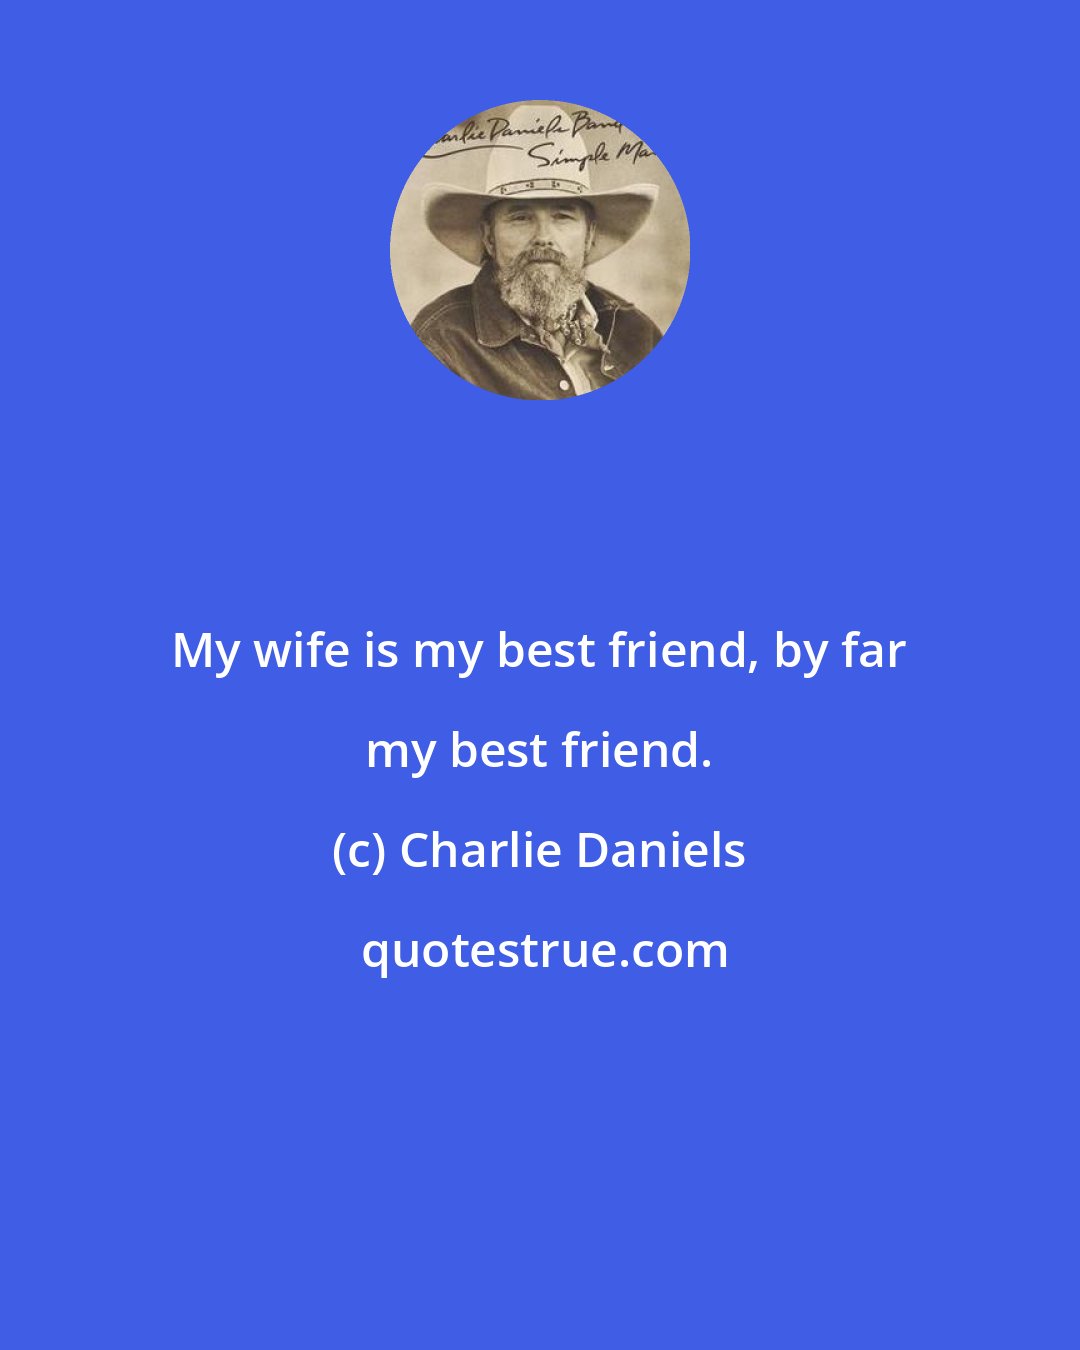 Charlie Daniels: My wife is my best friend, by far my best friend.